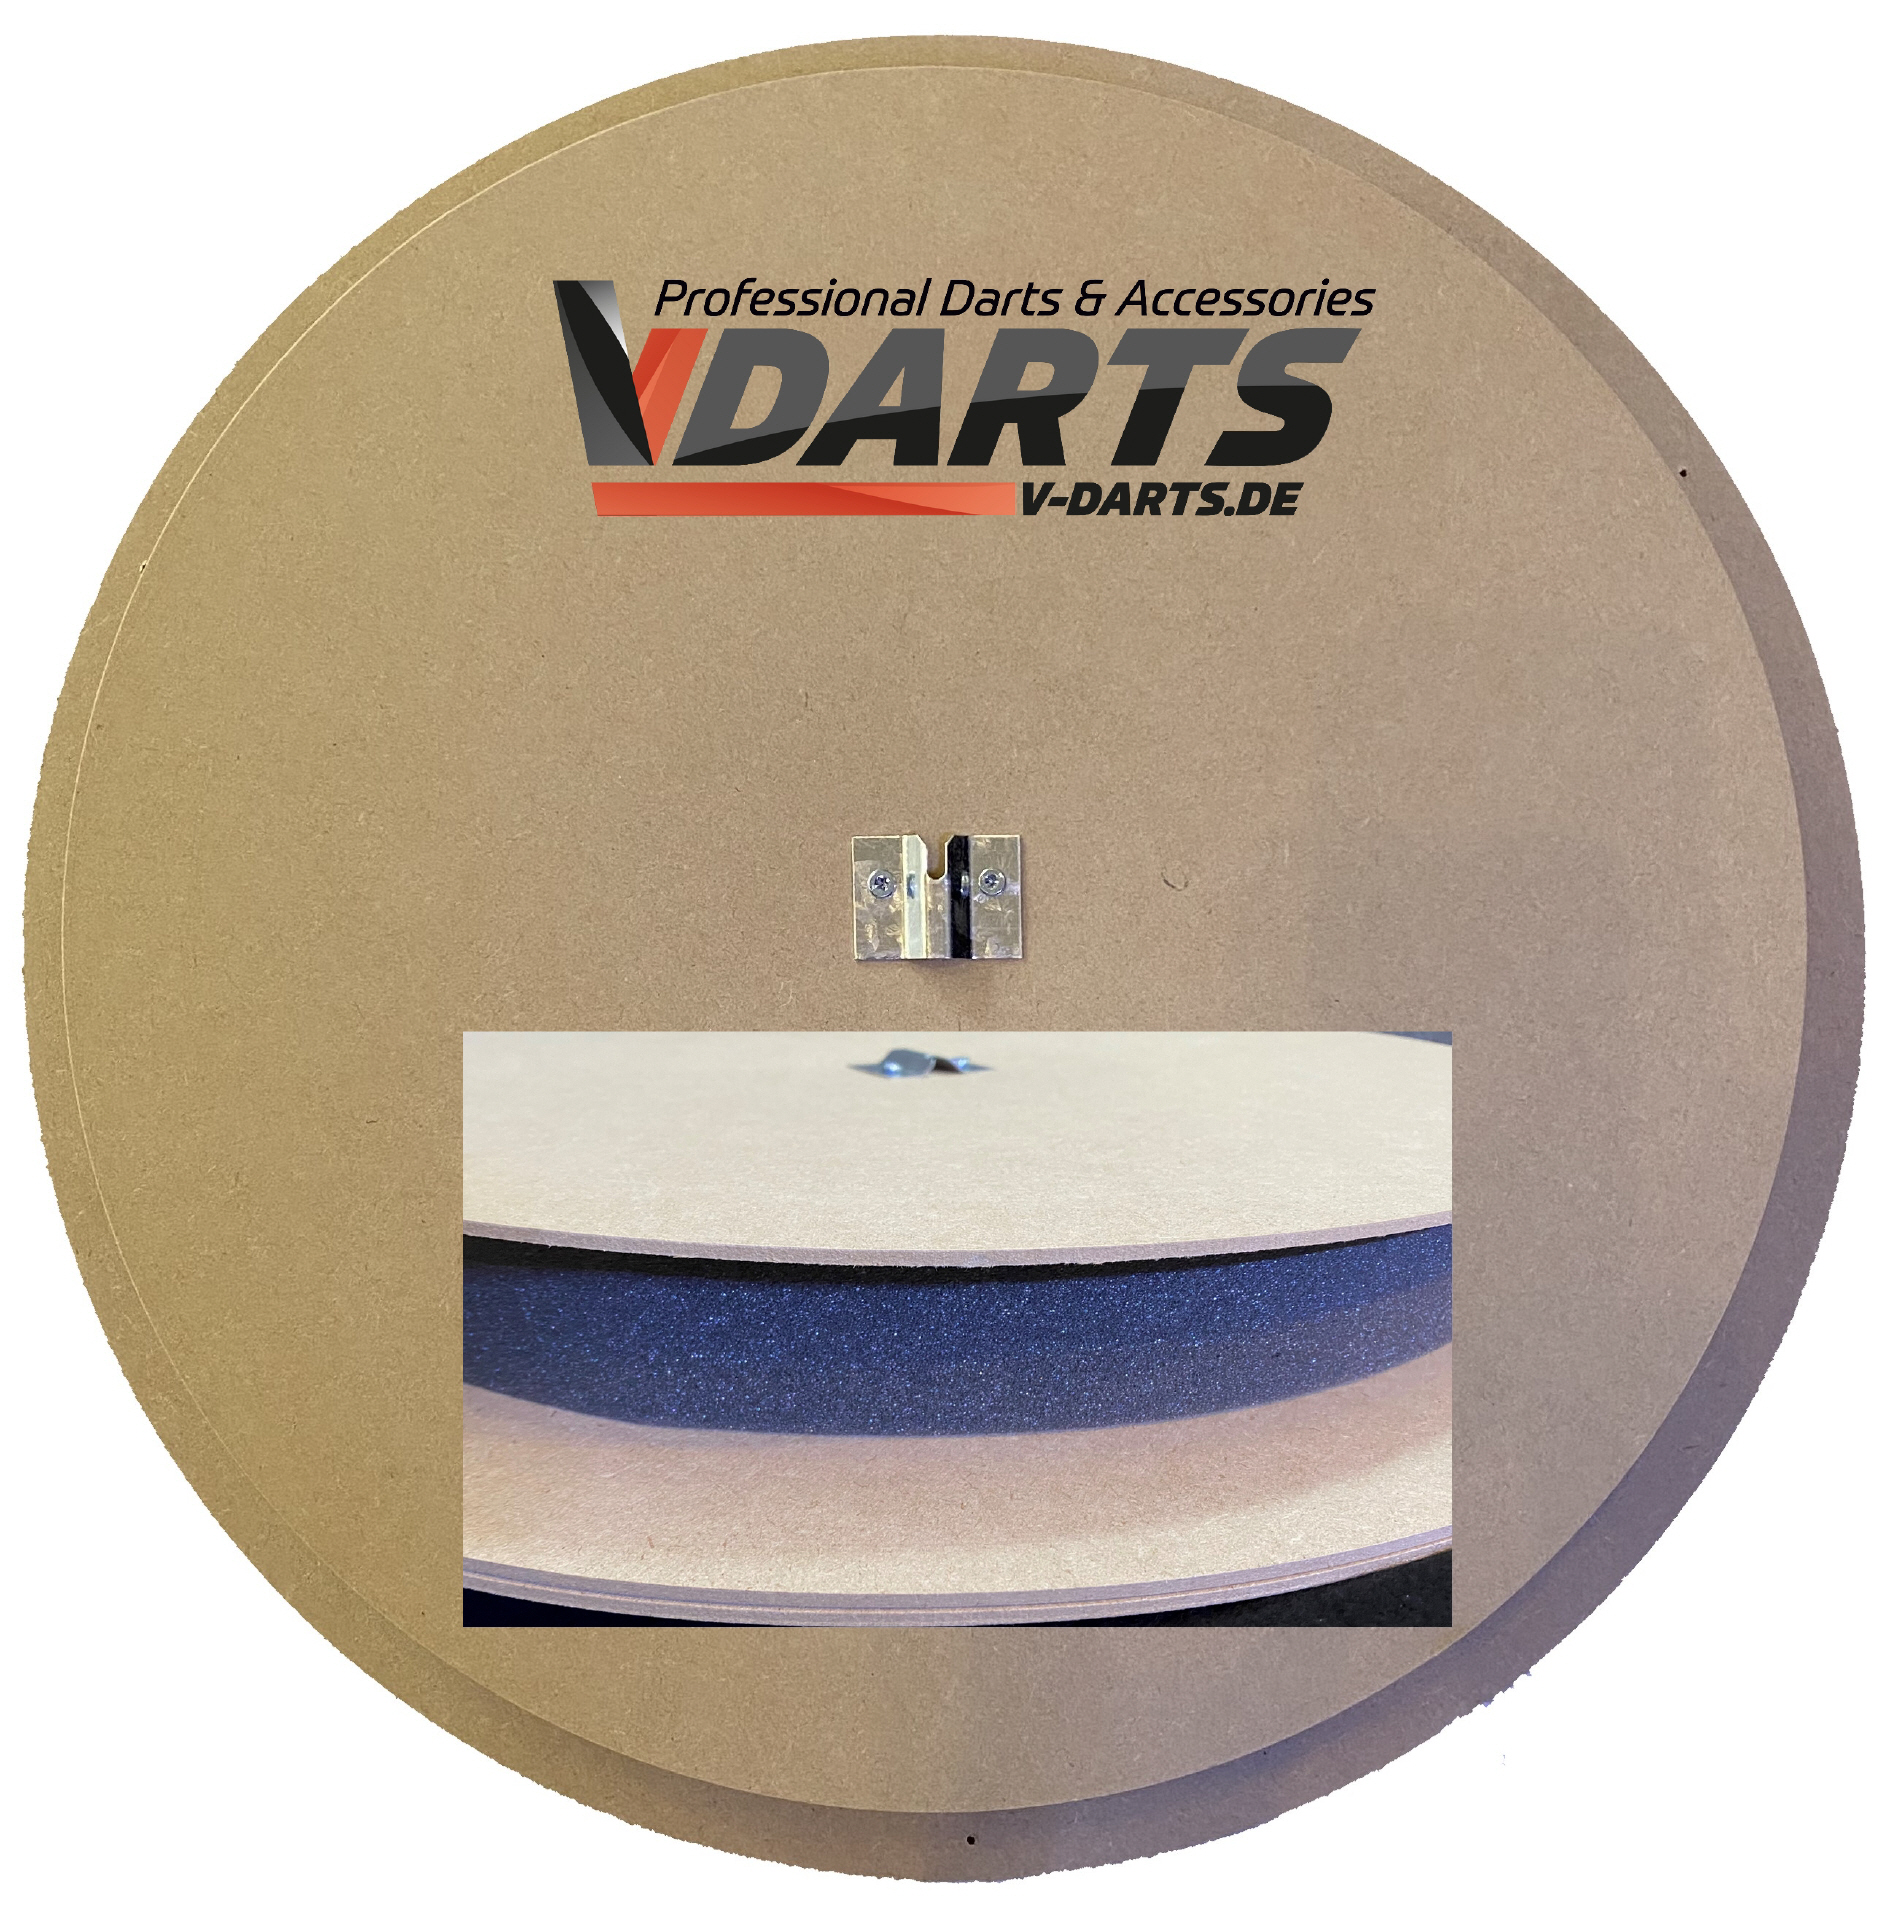 Schallschutz für Dartboard unter 20€!🔥🎯 #Darts #Dartswm #dartboard # schallschutz #dartsport 